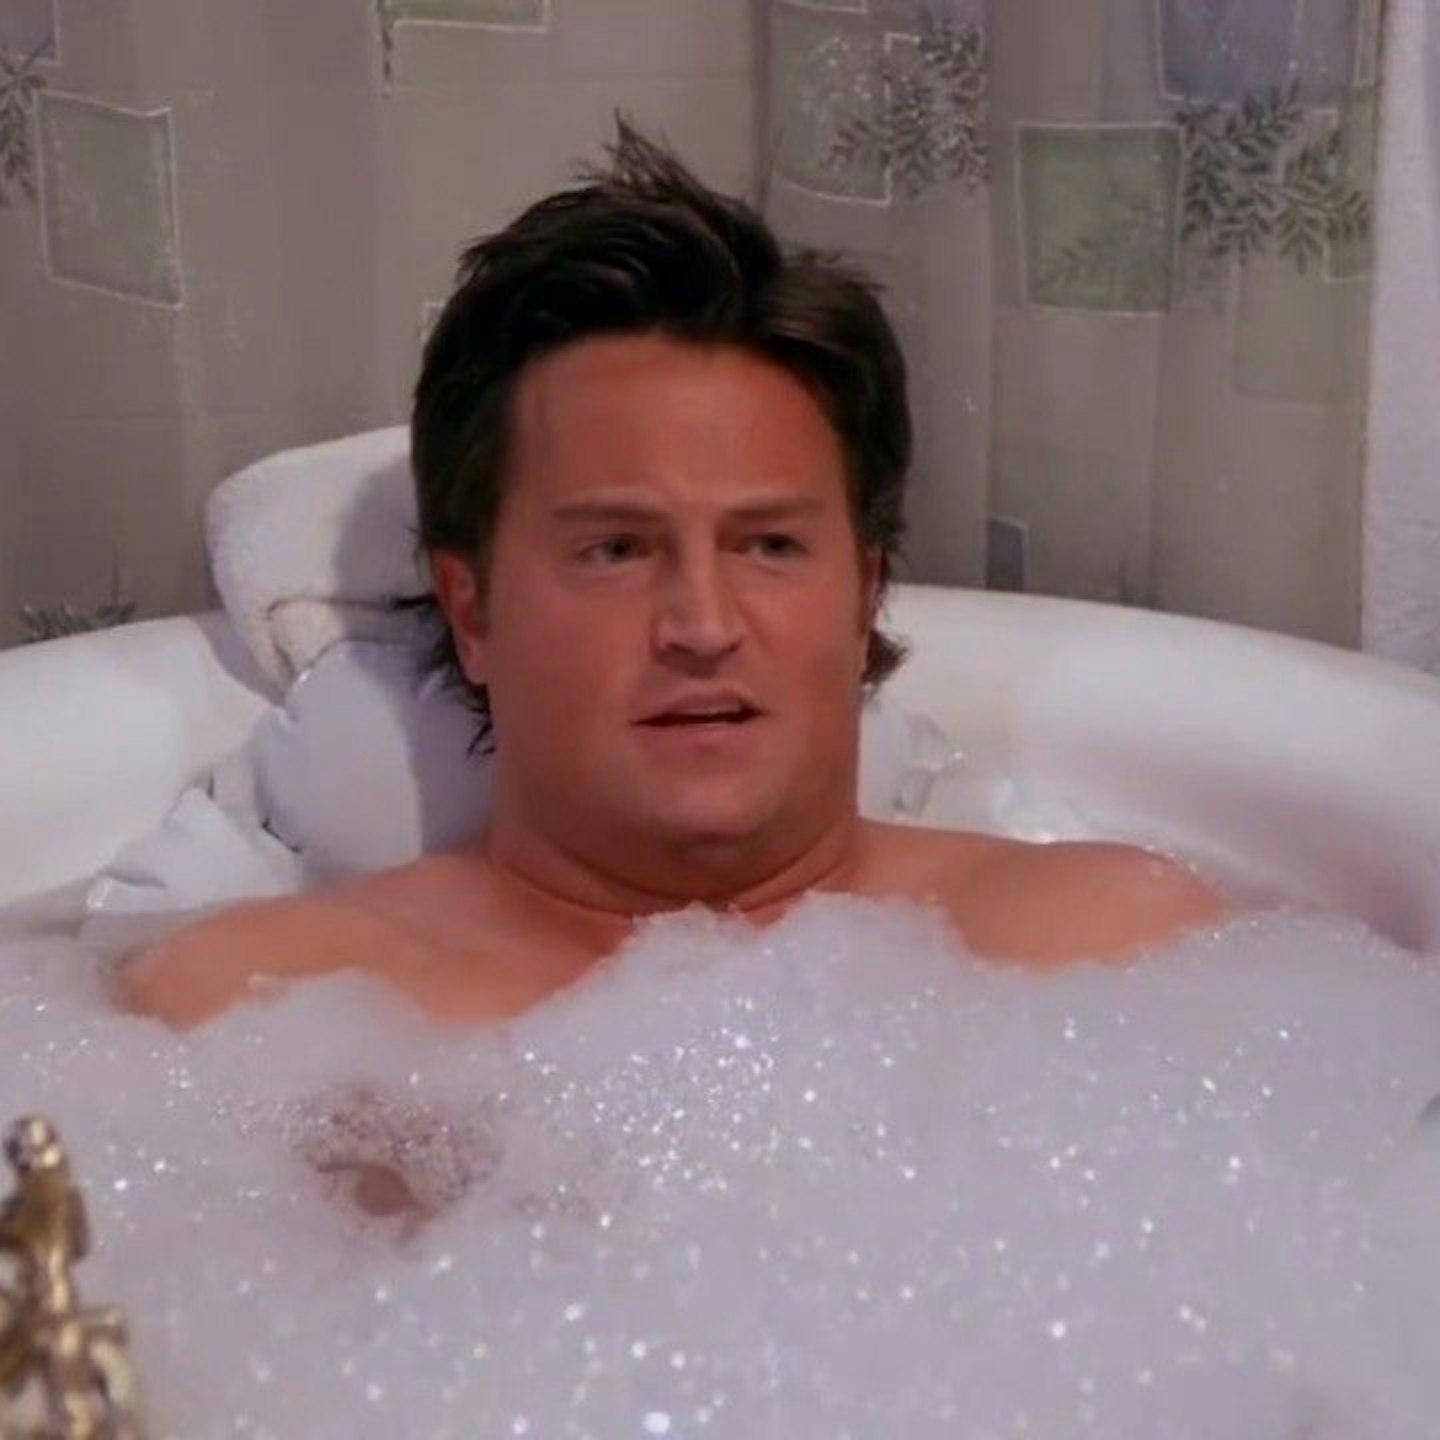 Chandler bath relaxing